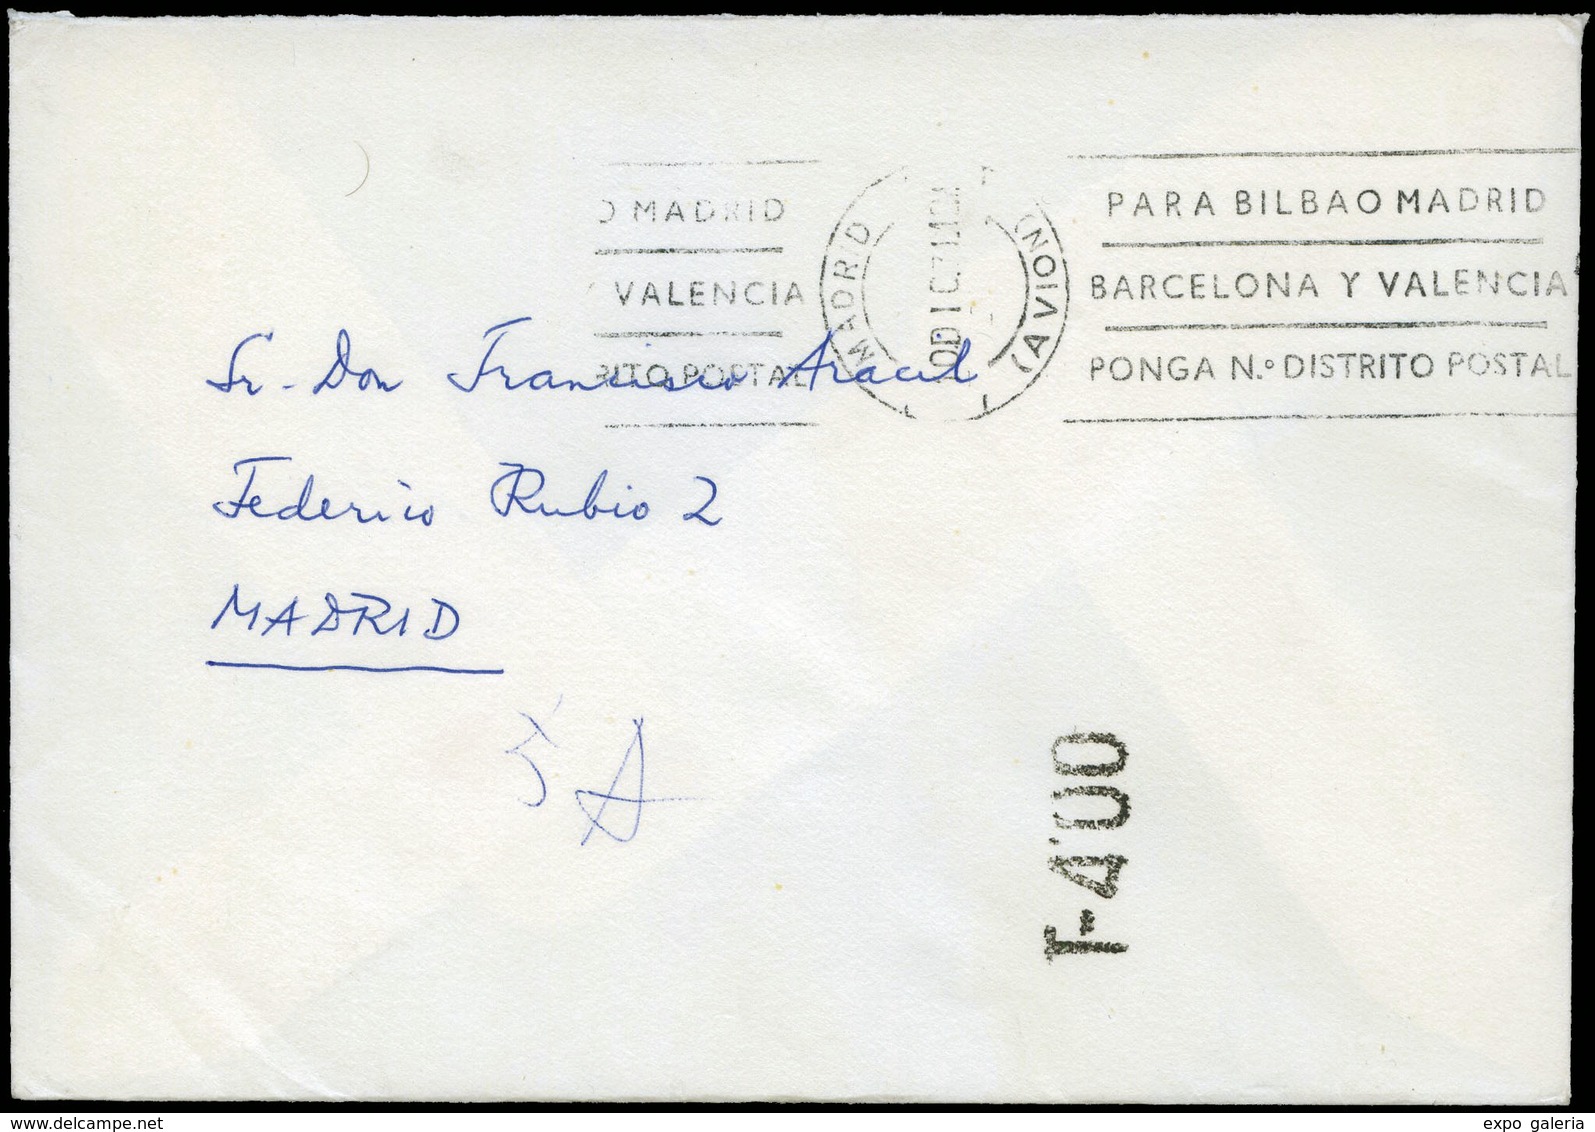 623 1971. Cda Sin Sellos Y Con Remite De “Luis Cervera Vera” A Madrid (correo Interior, El Rodillo Es De Avión ¿?) - Lettres & Documents